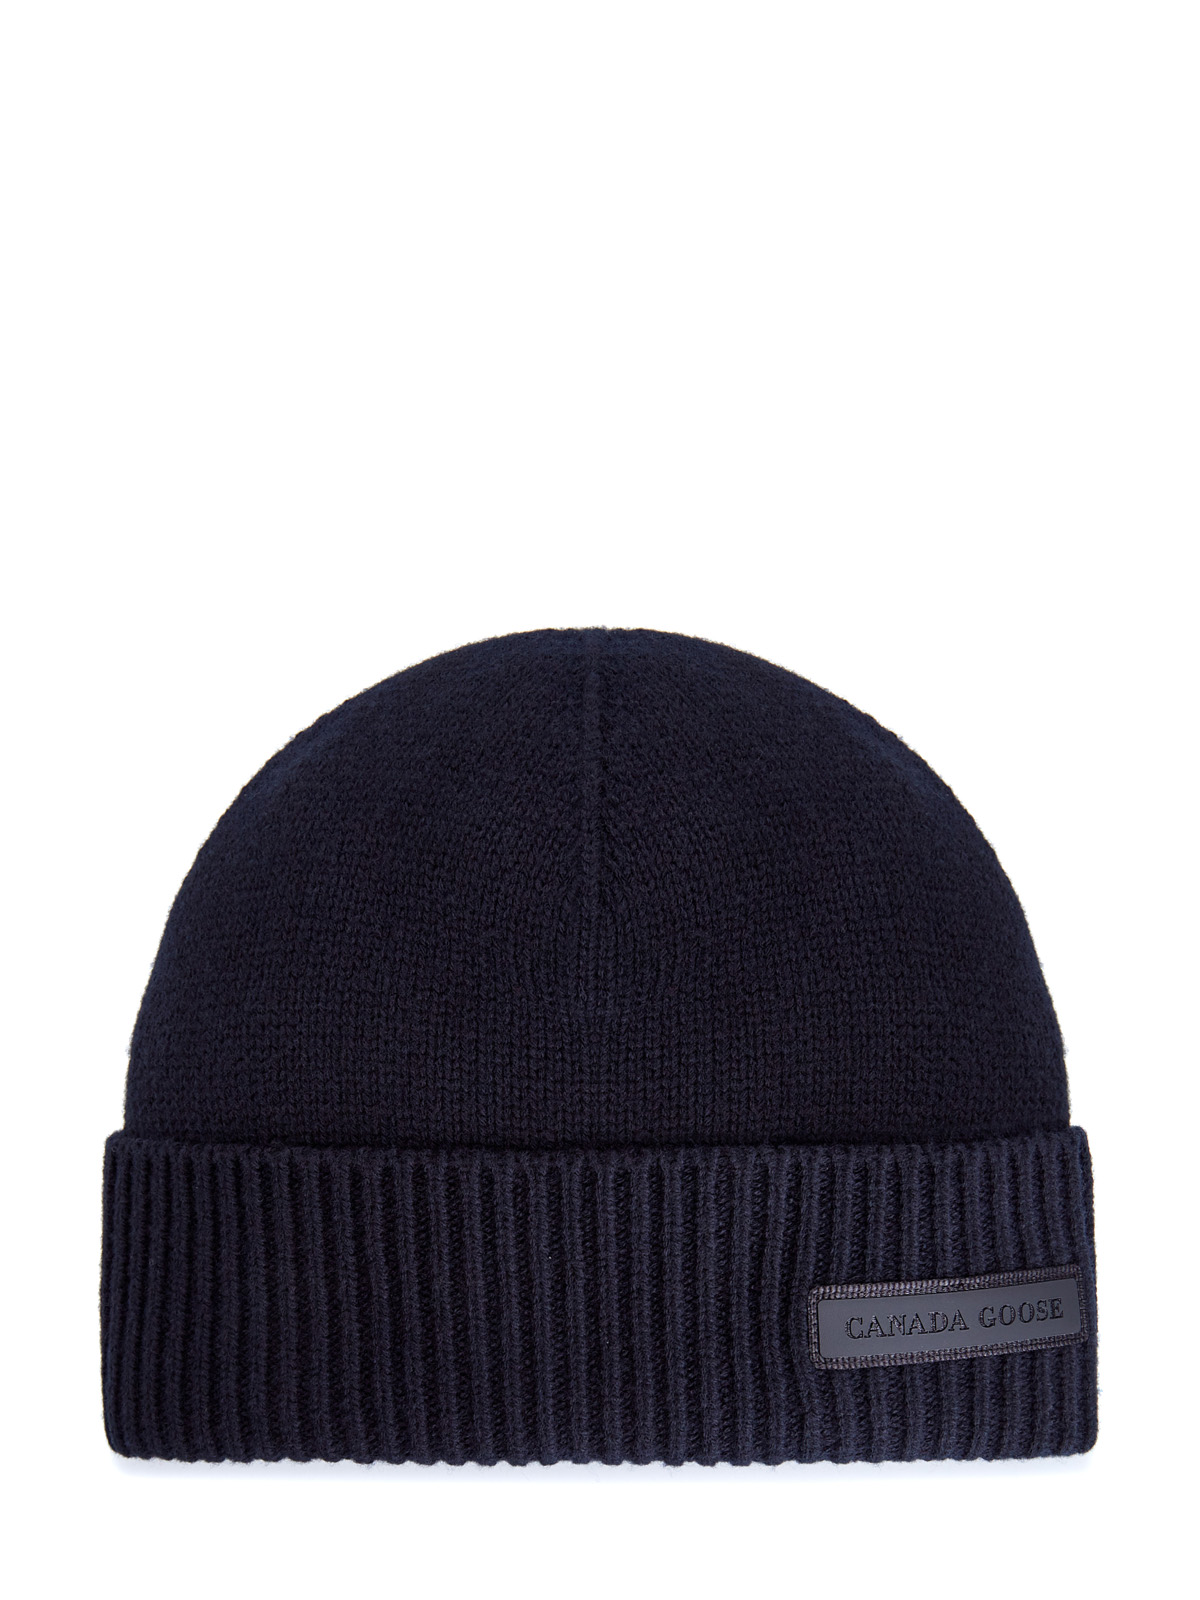 Теплая шапка из шерсти мериноса с патчем на отвороте CANADA GOOSE, цвет черный, размер 40 - фото 1